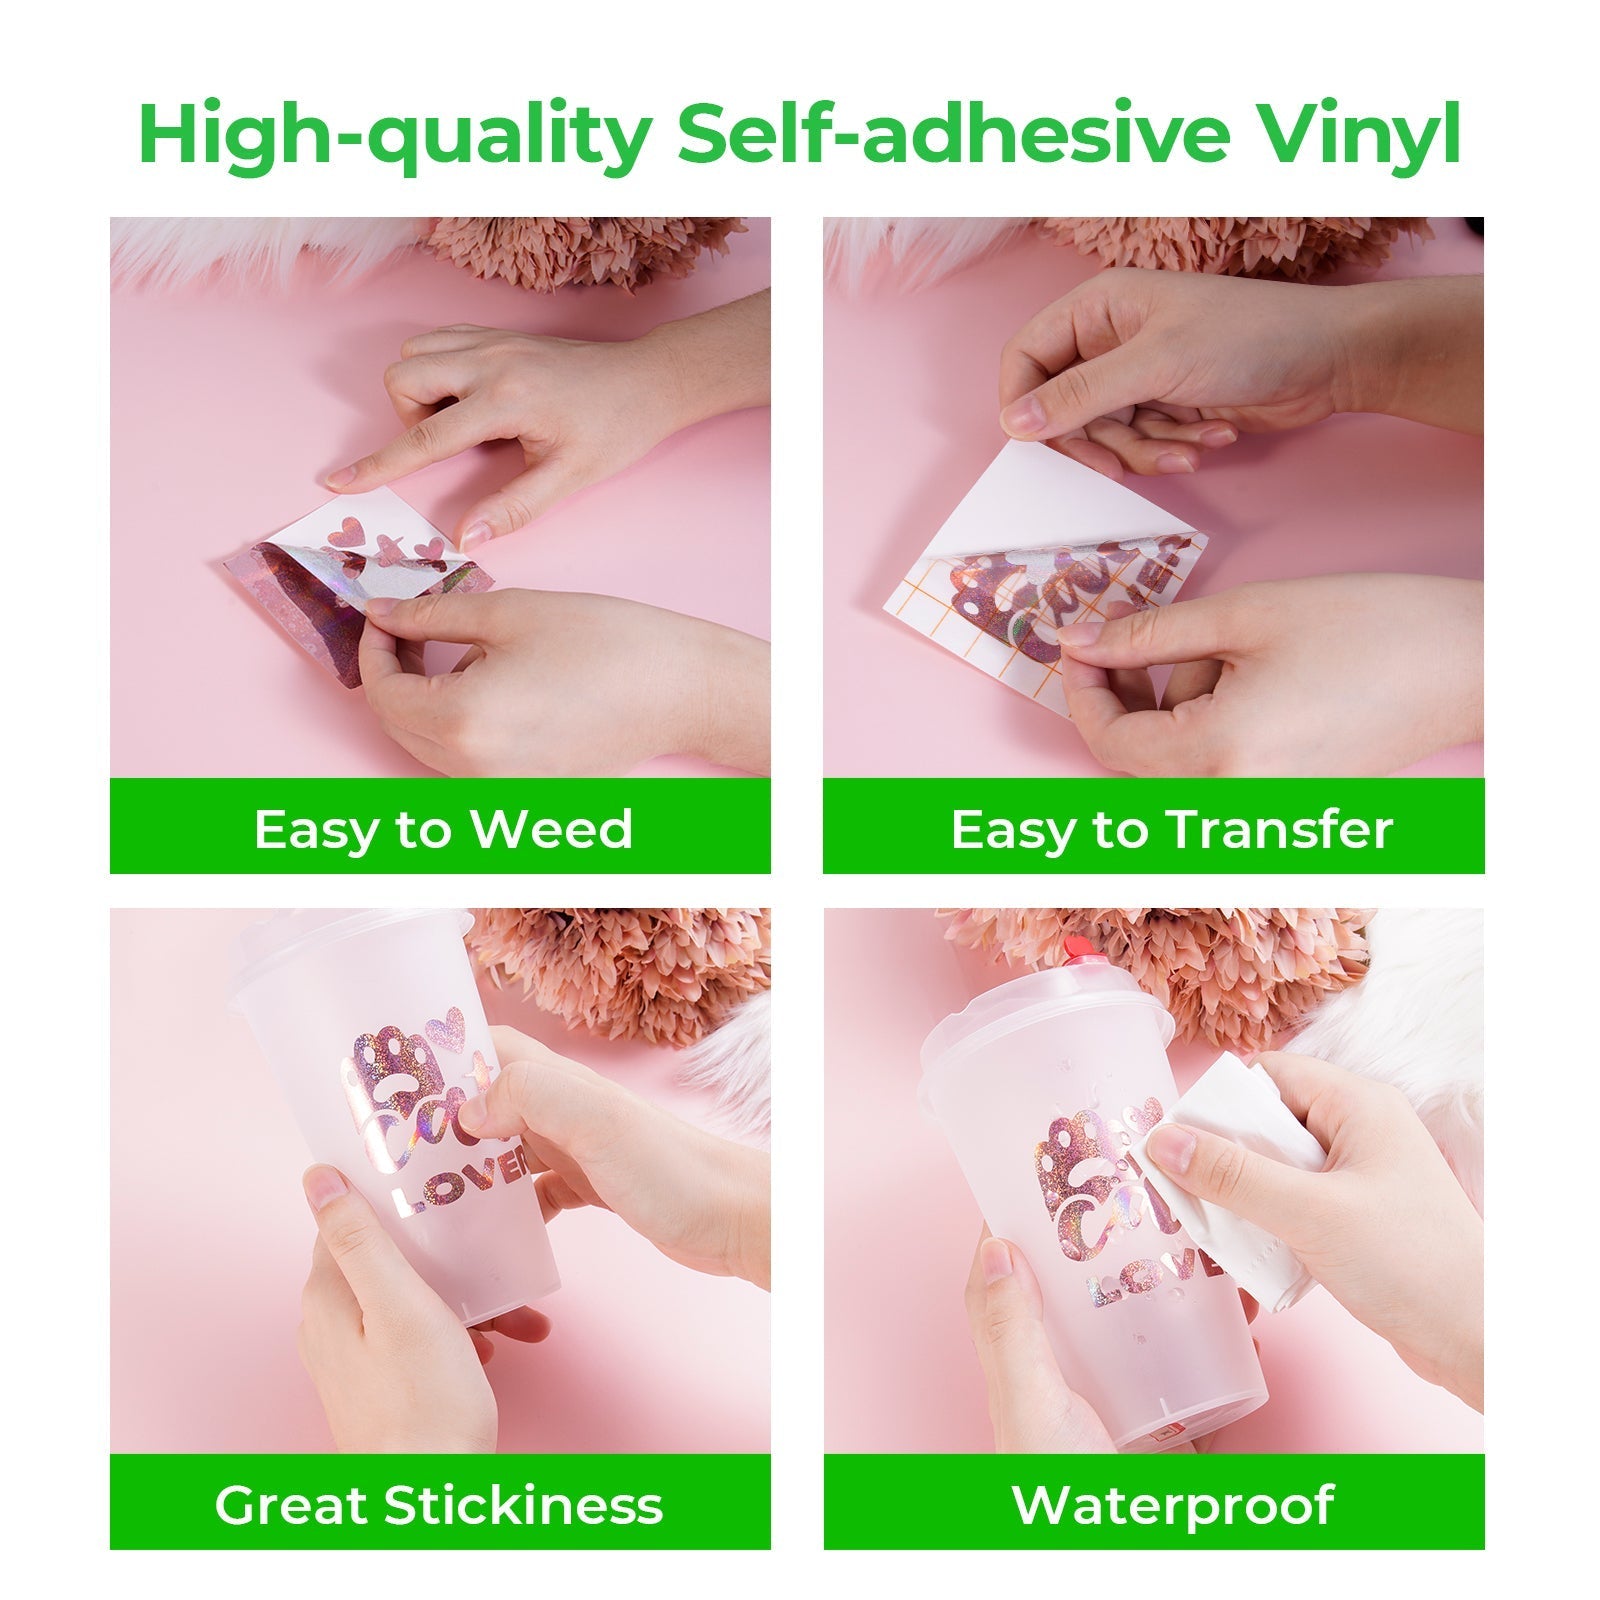 Free Self-adhesive Vinyl Kit (80pcs)